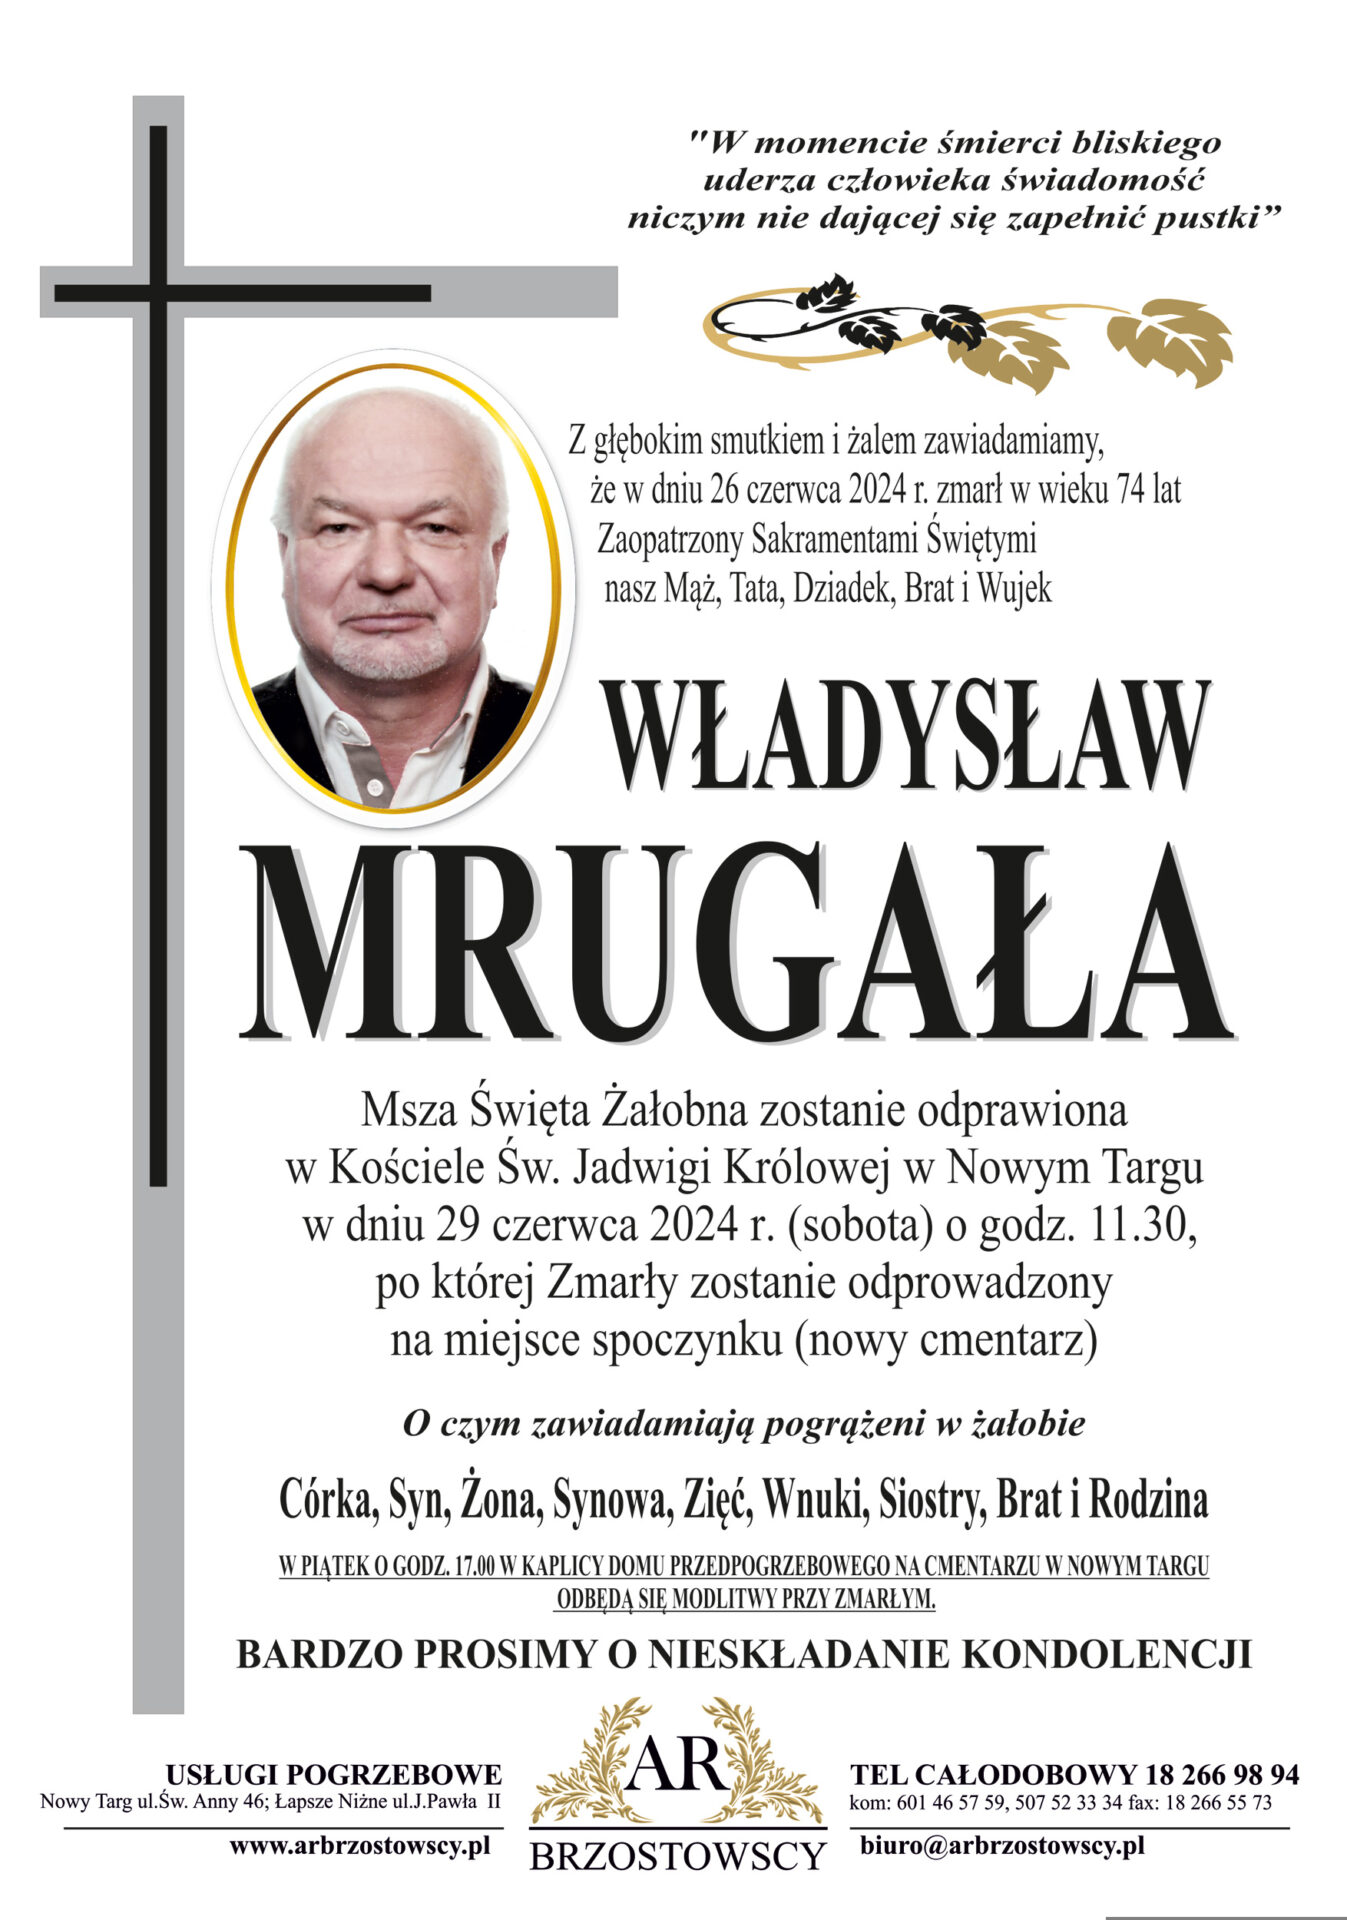 Władysław Mrugała